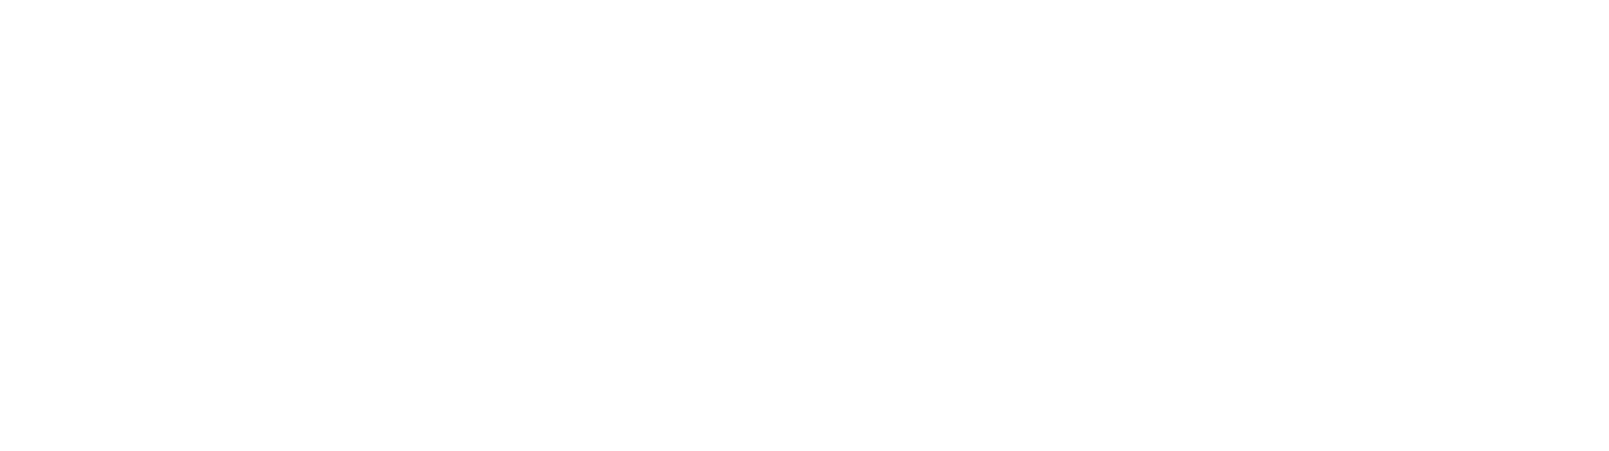 apesta Schädlingsbekämpfung - Logo weiß